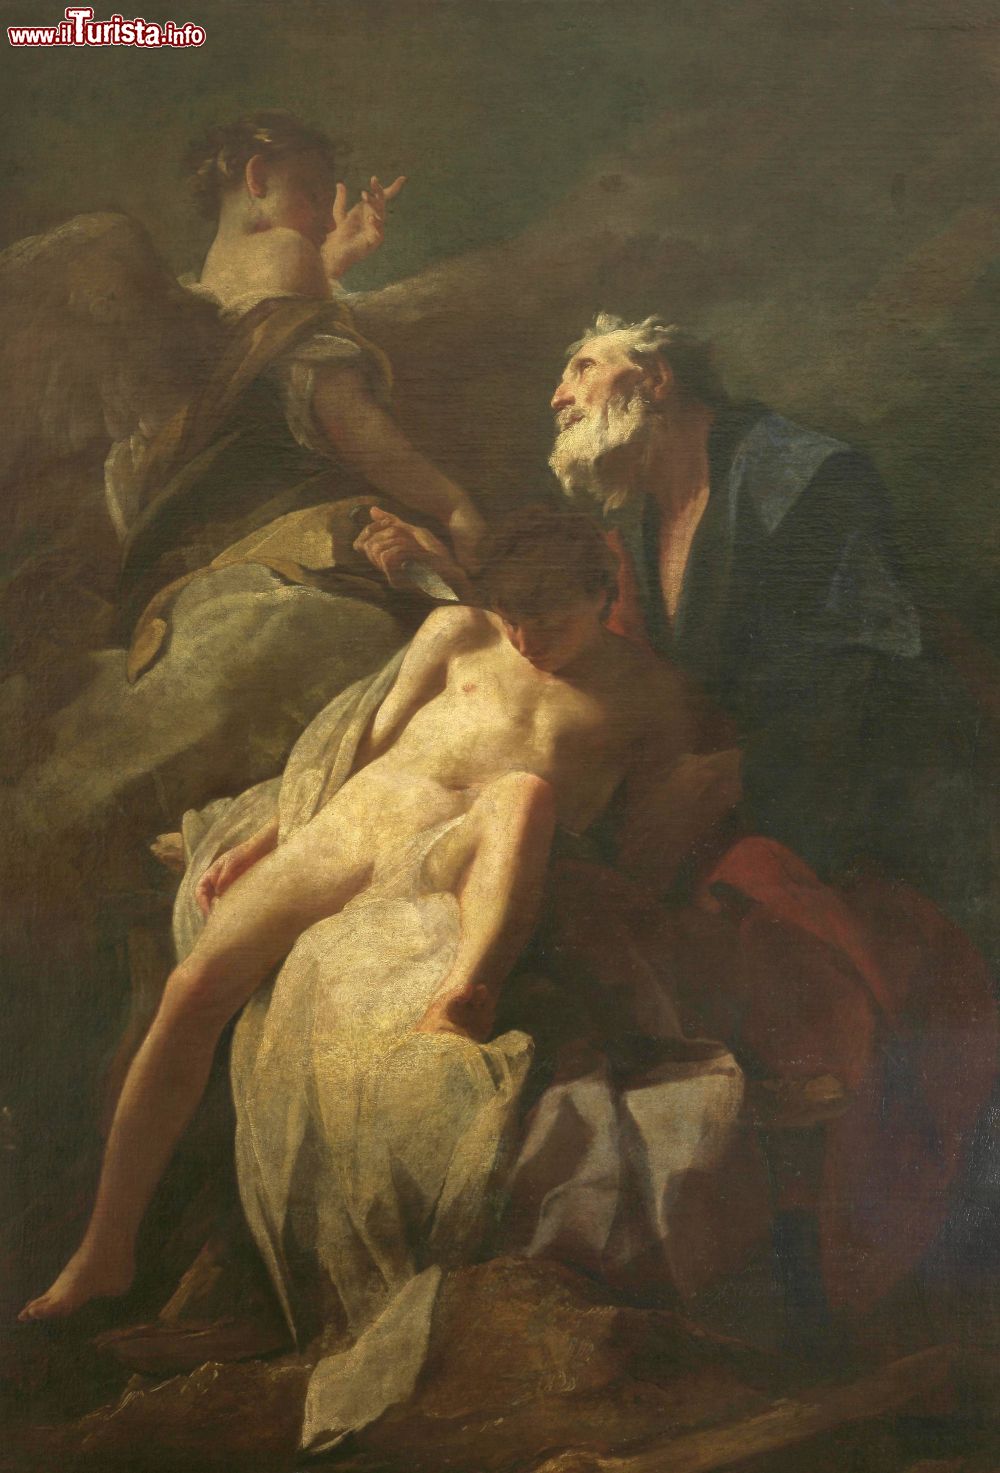 Immagine L'opera "Abraham's sacrifice of Isaac" di Federico Bencovich esposta nella Galleria Strossmayer degli Antichi Maestri di Zagabria (Croazia).